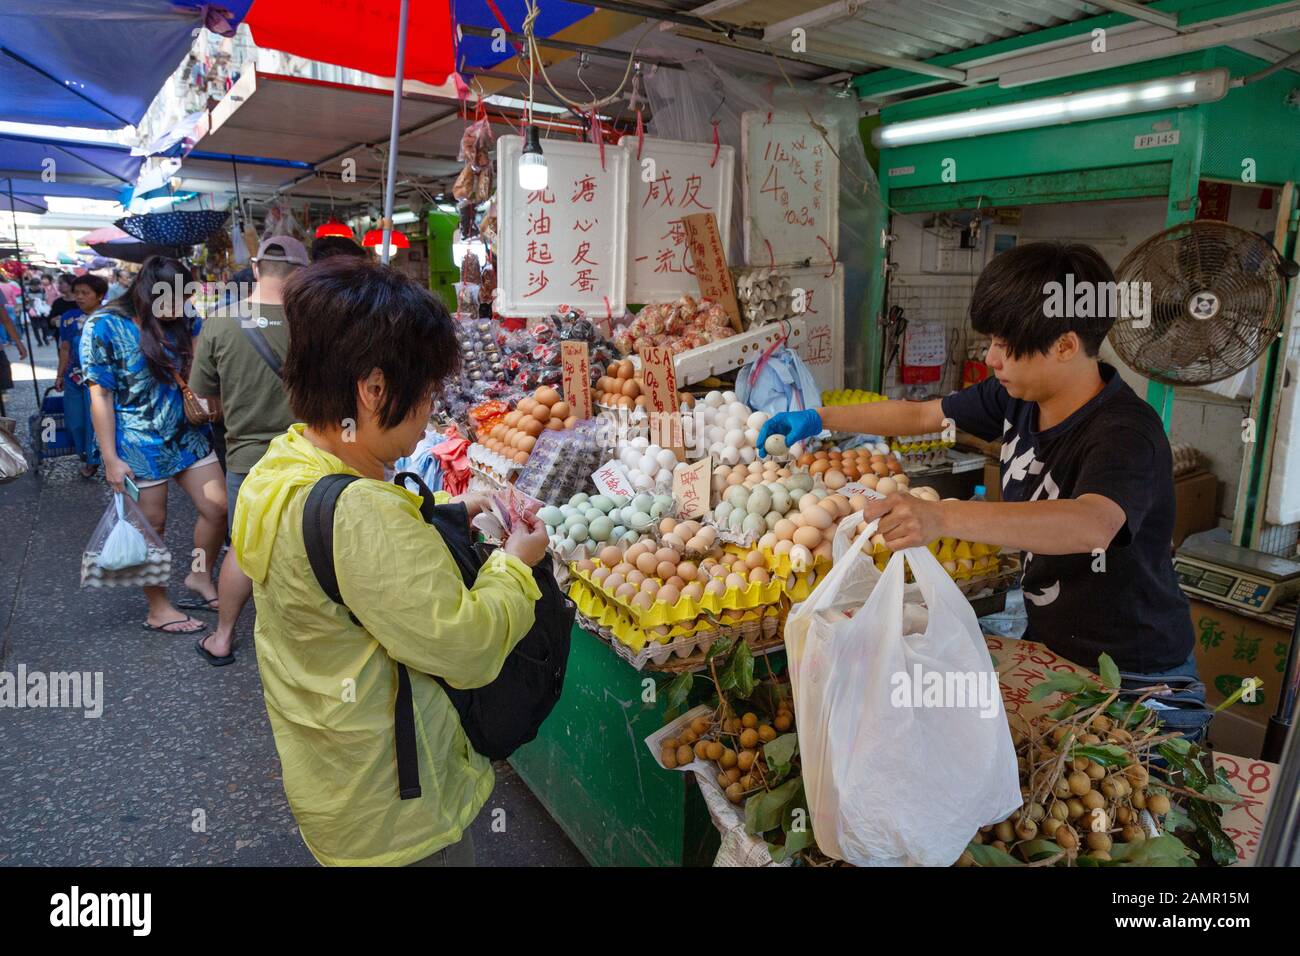 Asiatischer Lebensstil; Menschen, die Lebensmittel und Eier an einem Marktstand, Bowring Street, kowloon Hong Kong Asia kaufen Stockfoto